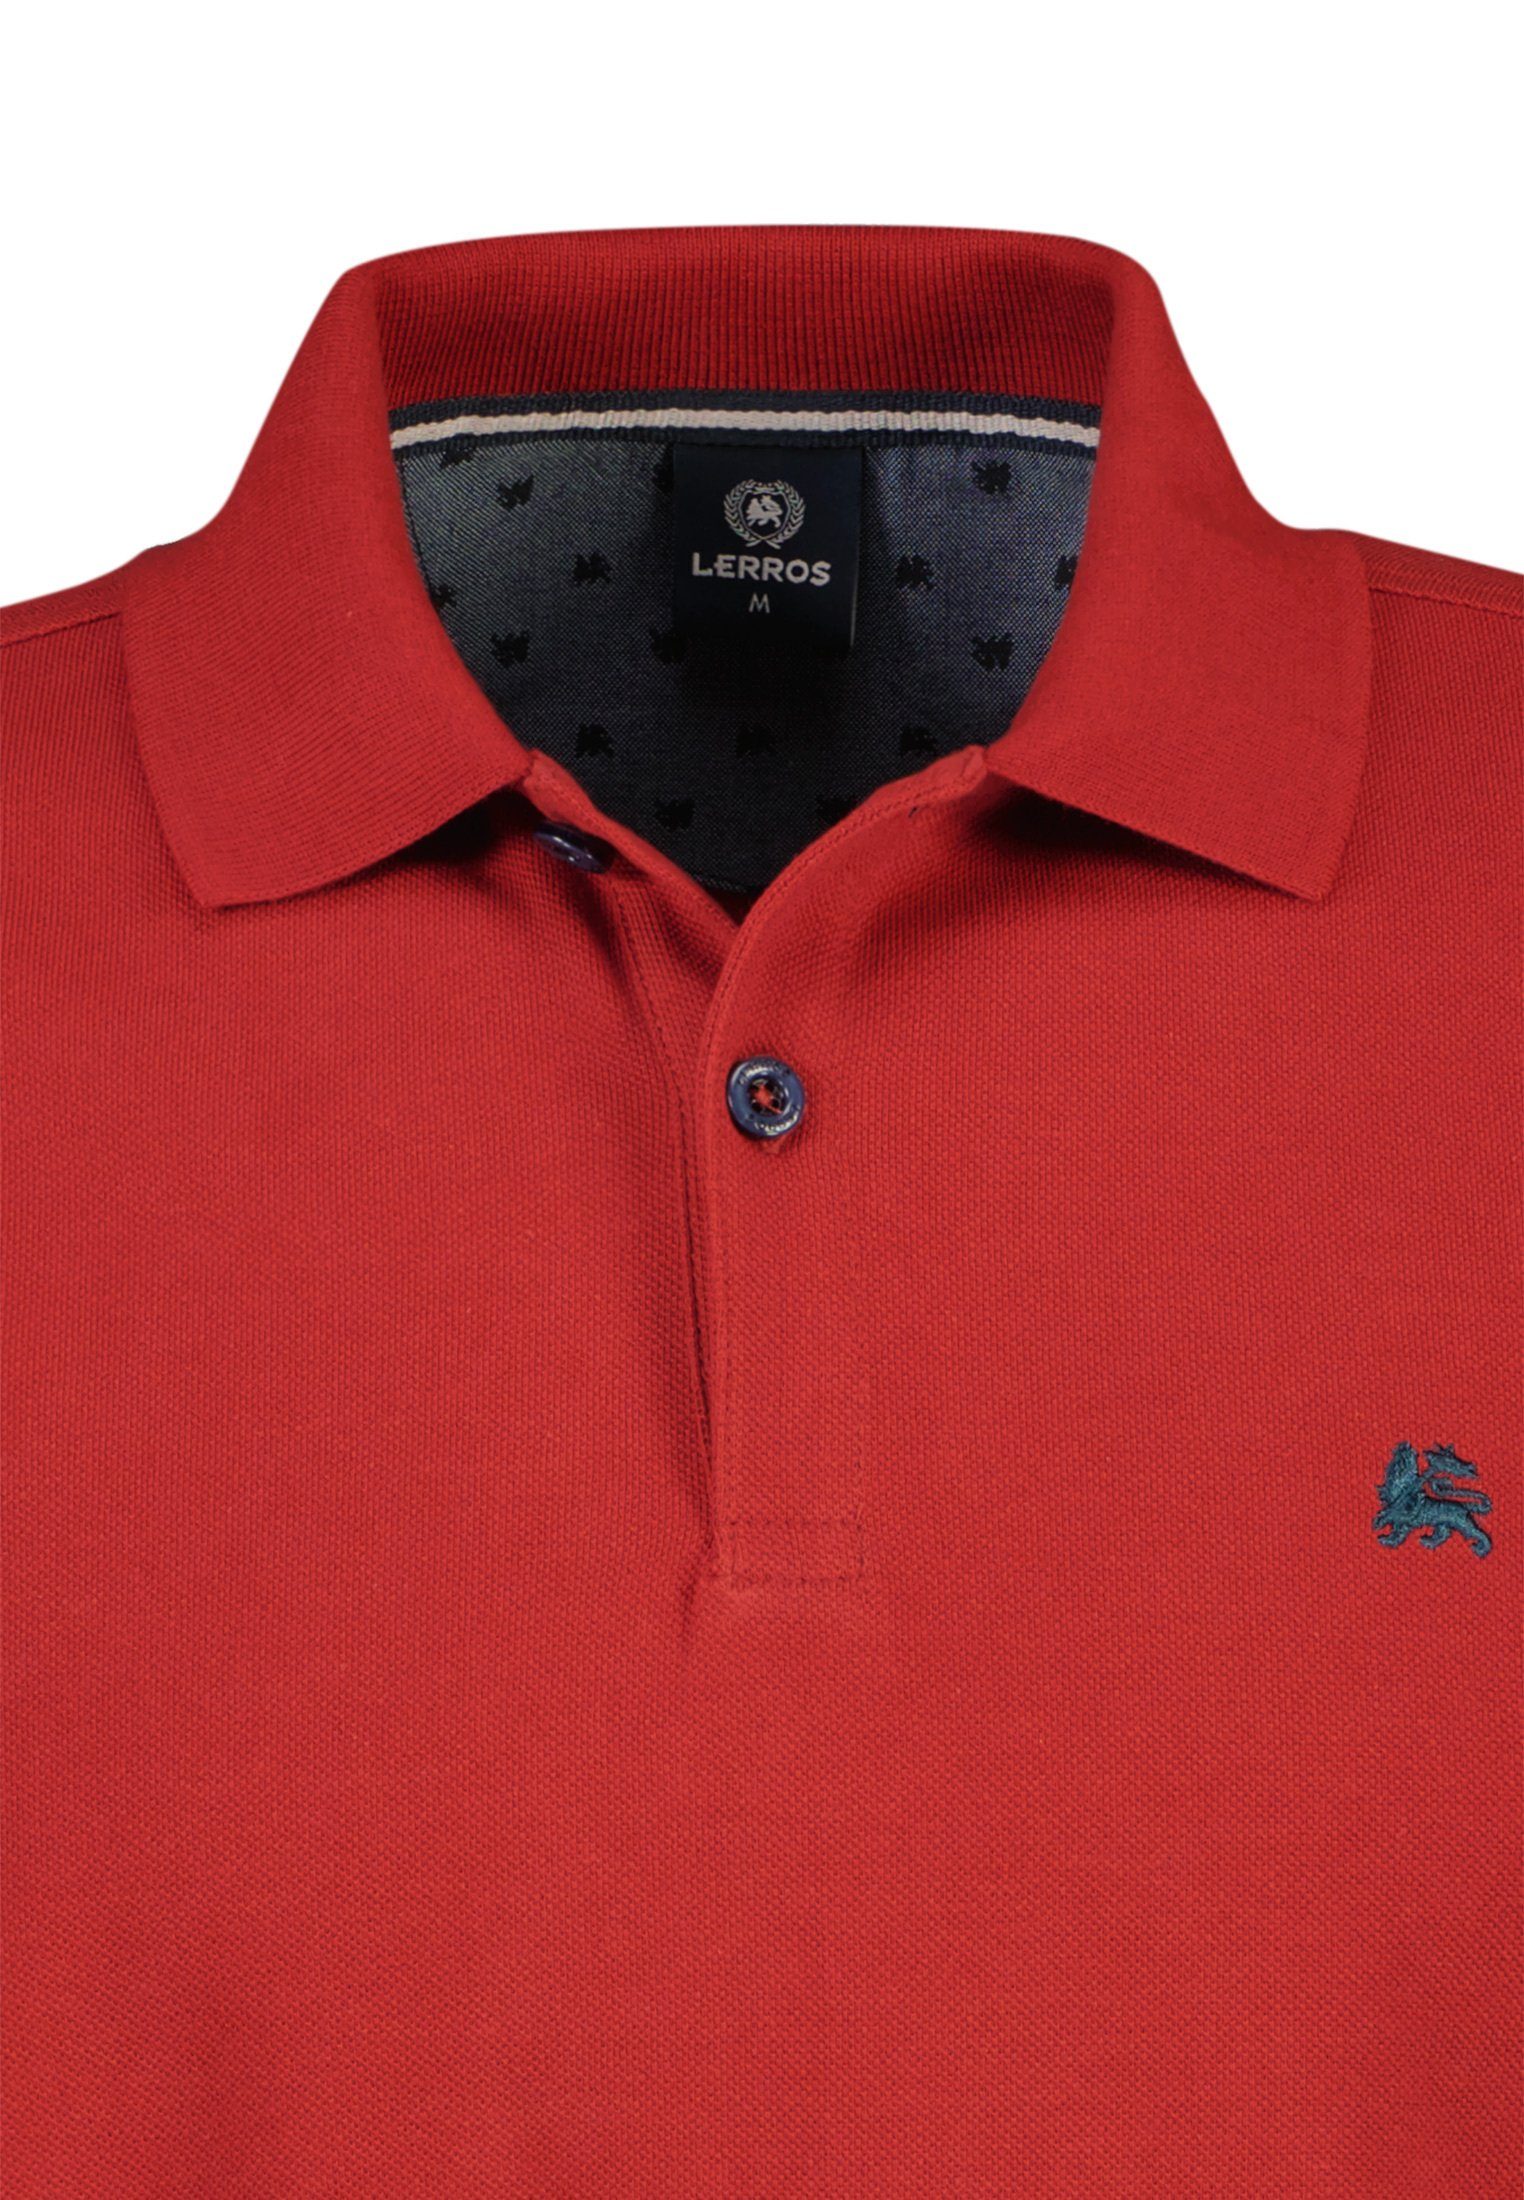 Piqué-Baumwollqualität, hochwertiger LERROS RED BCI Poloshirt in LERROS Poloshirt RUSTY